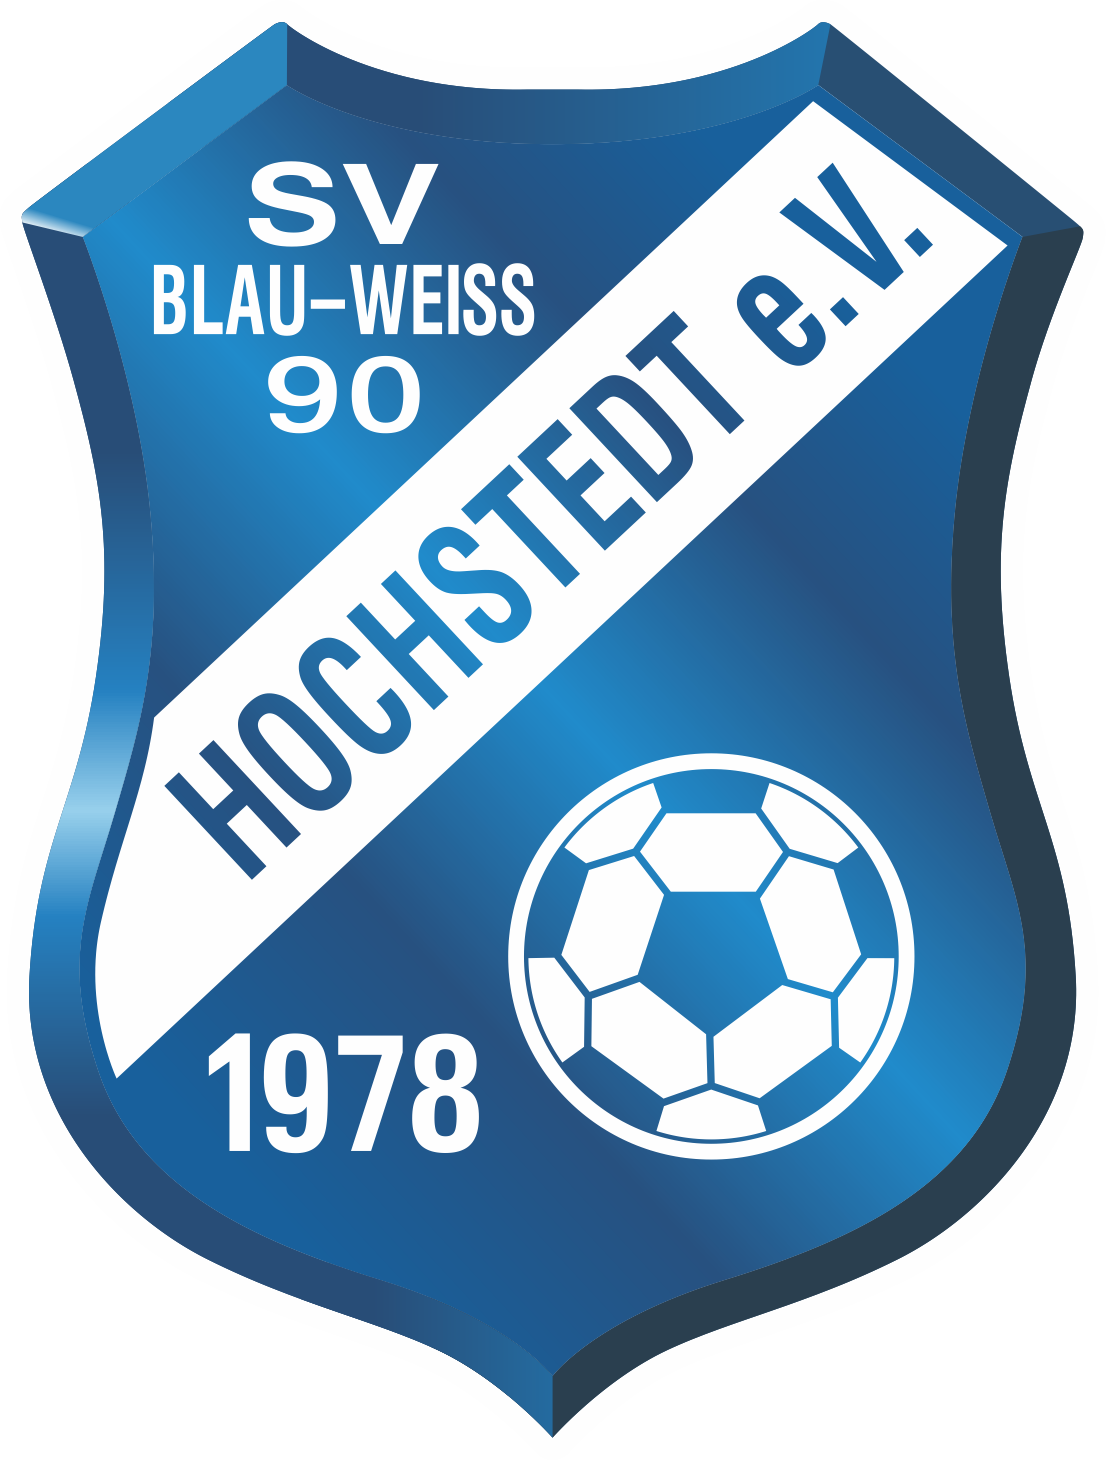 SV Blau-Weiß 90 Hochstedt Logo